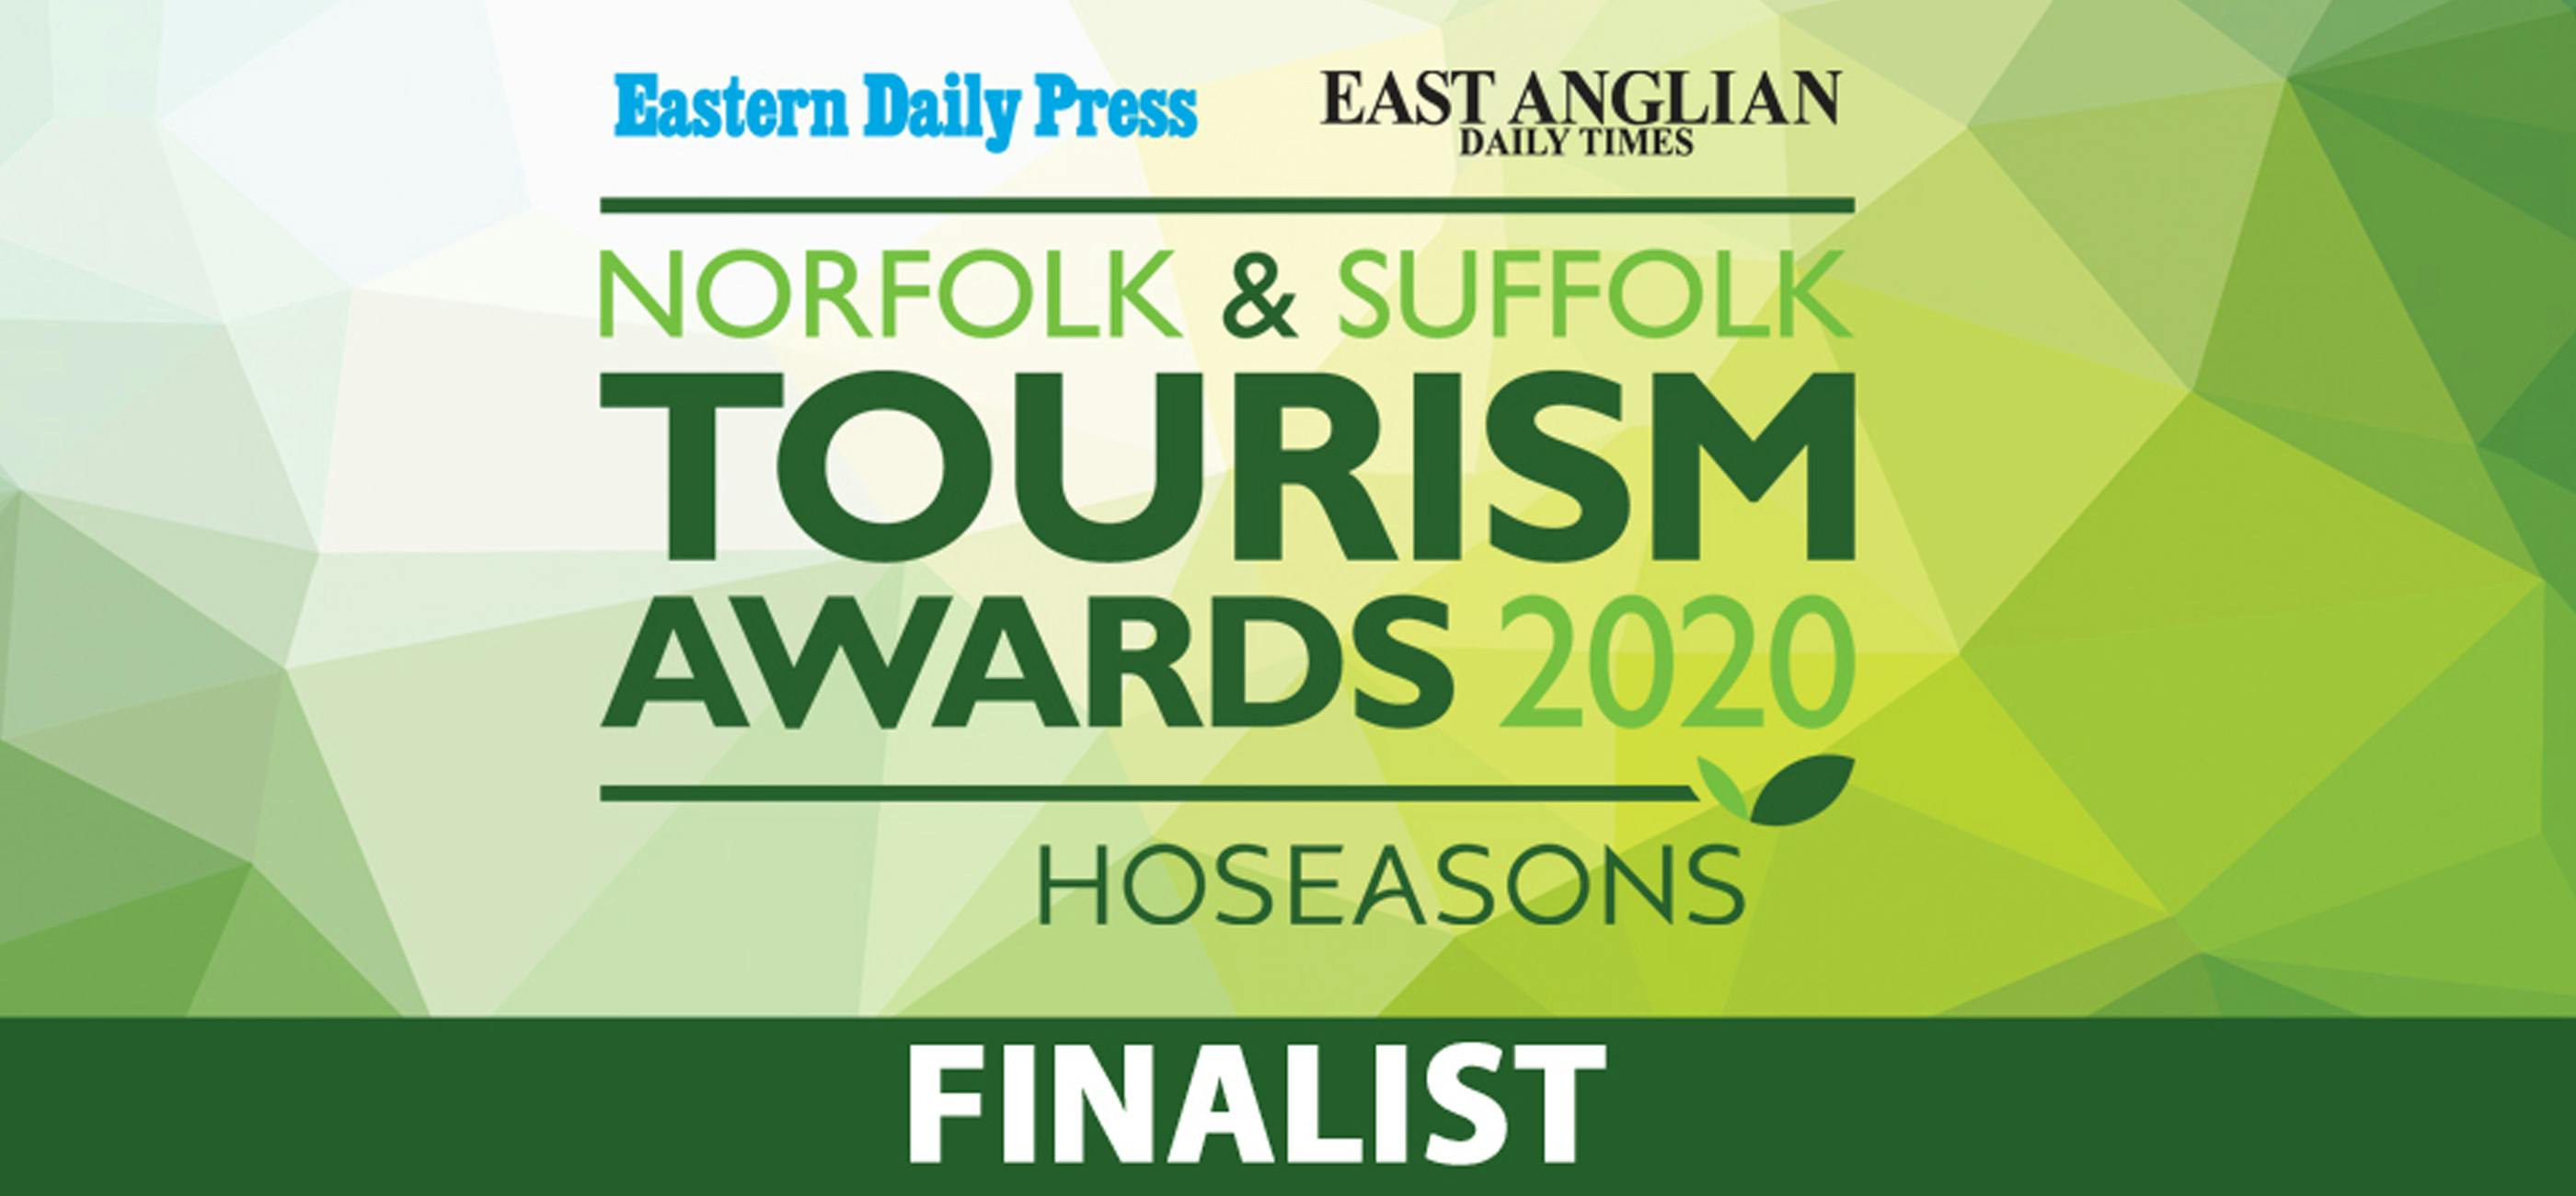 Norfolk & Suffolk Tourism Awards 2020 finalist